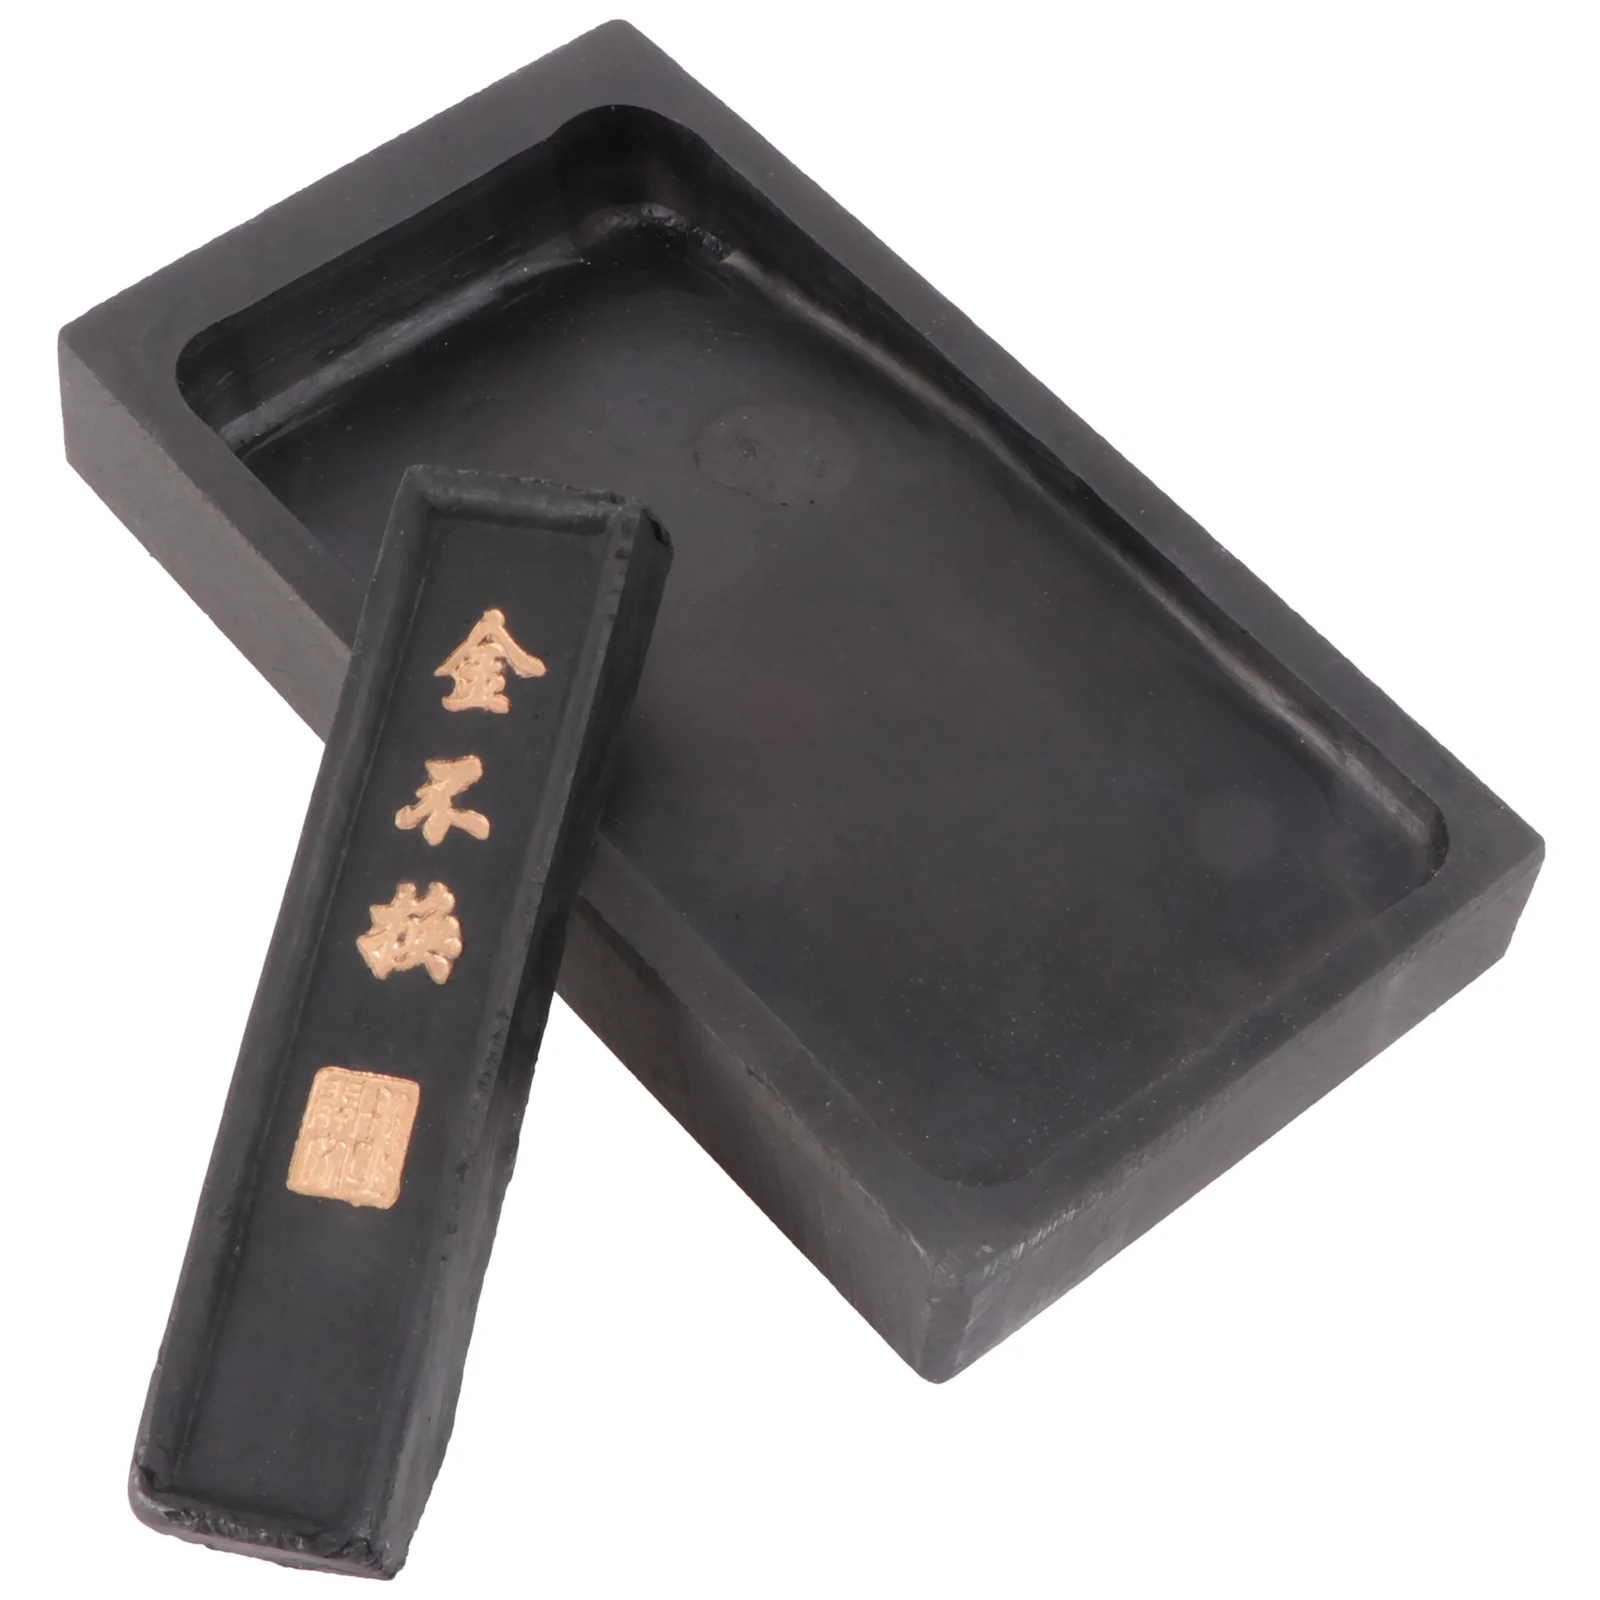 

Чернильный камень, чернильный камень, каллиграфия, живопись, Китайская традиционная шлифовальная чернильная палочка, блок наклеек, контейнер для тренировок, чернильная плитка